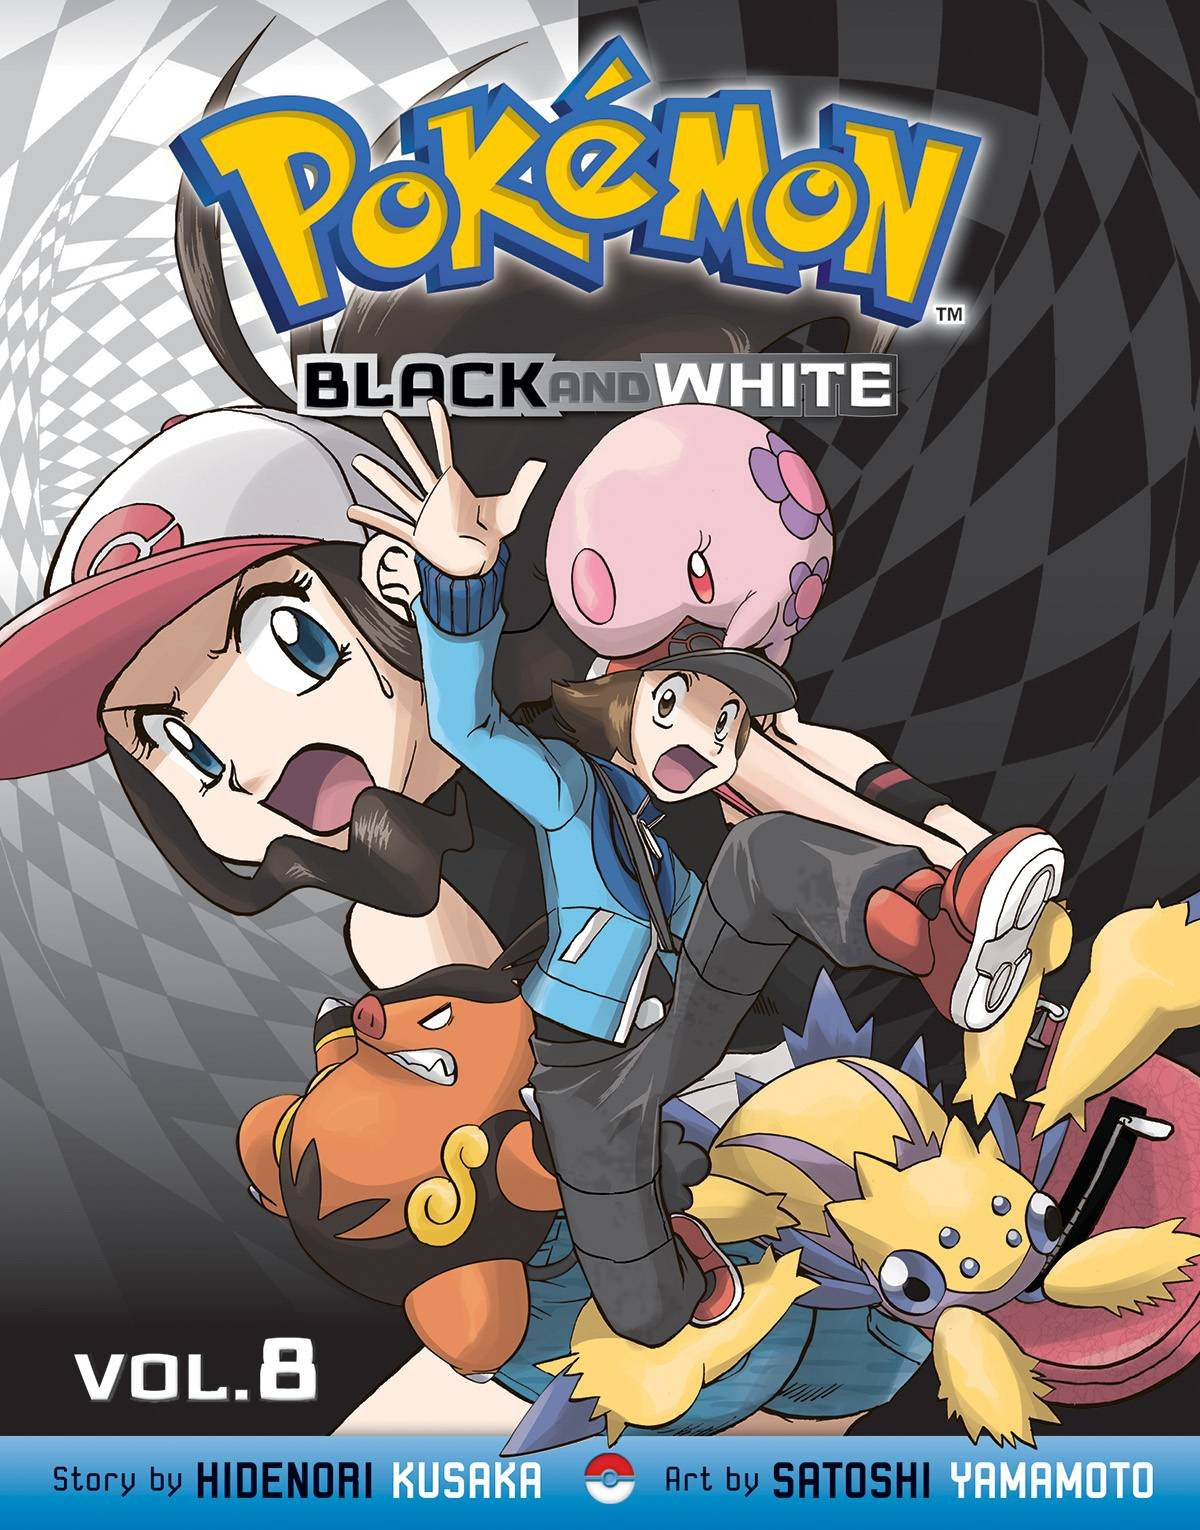 Покемон Black and White. Покемон поставь покемон поставь. Установить покемон. Pokémon Adventures: Black and White, Vol. 4. Покемон установить